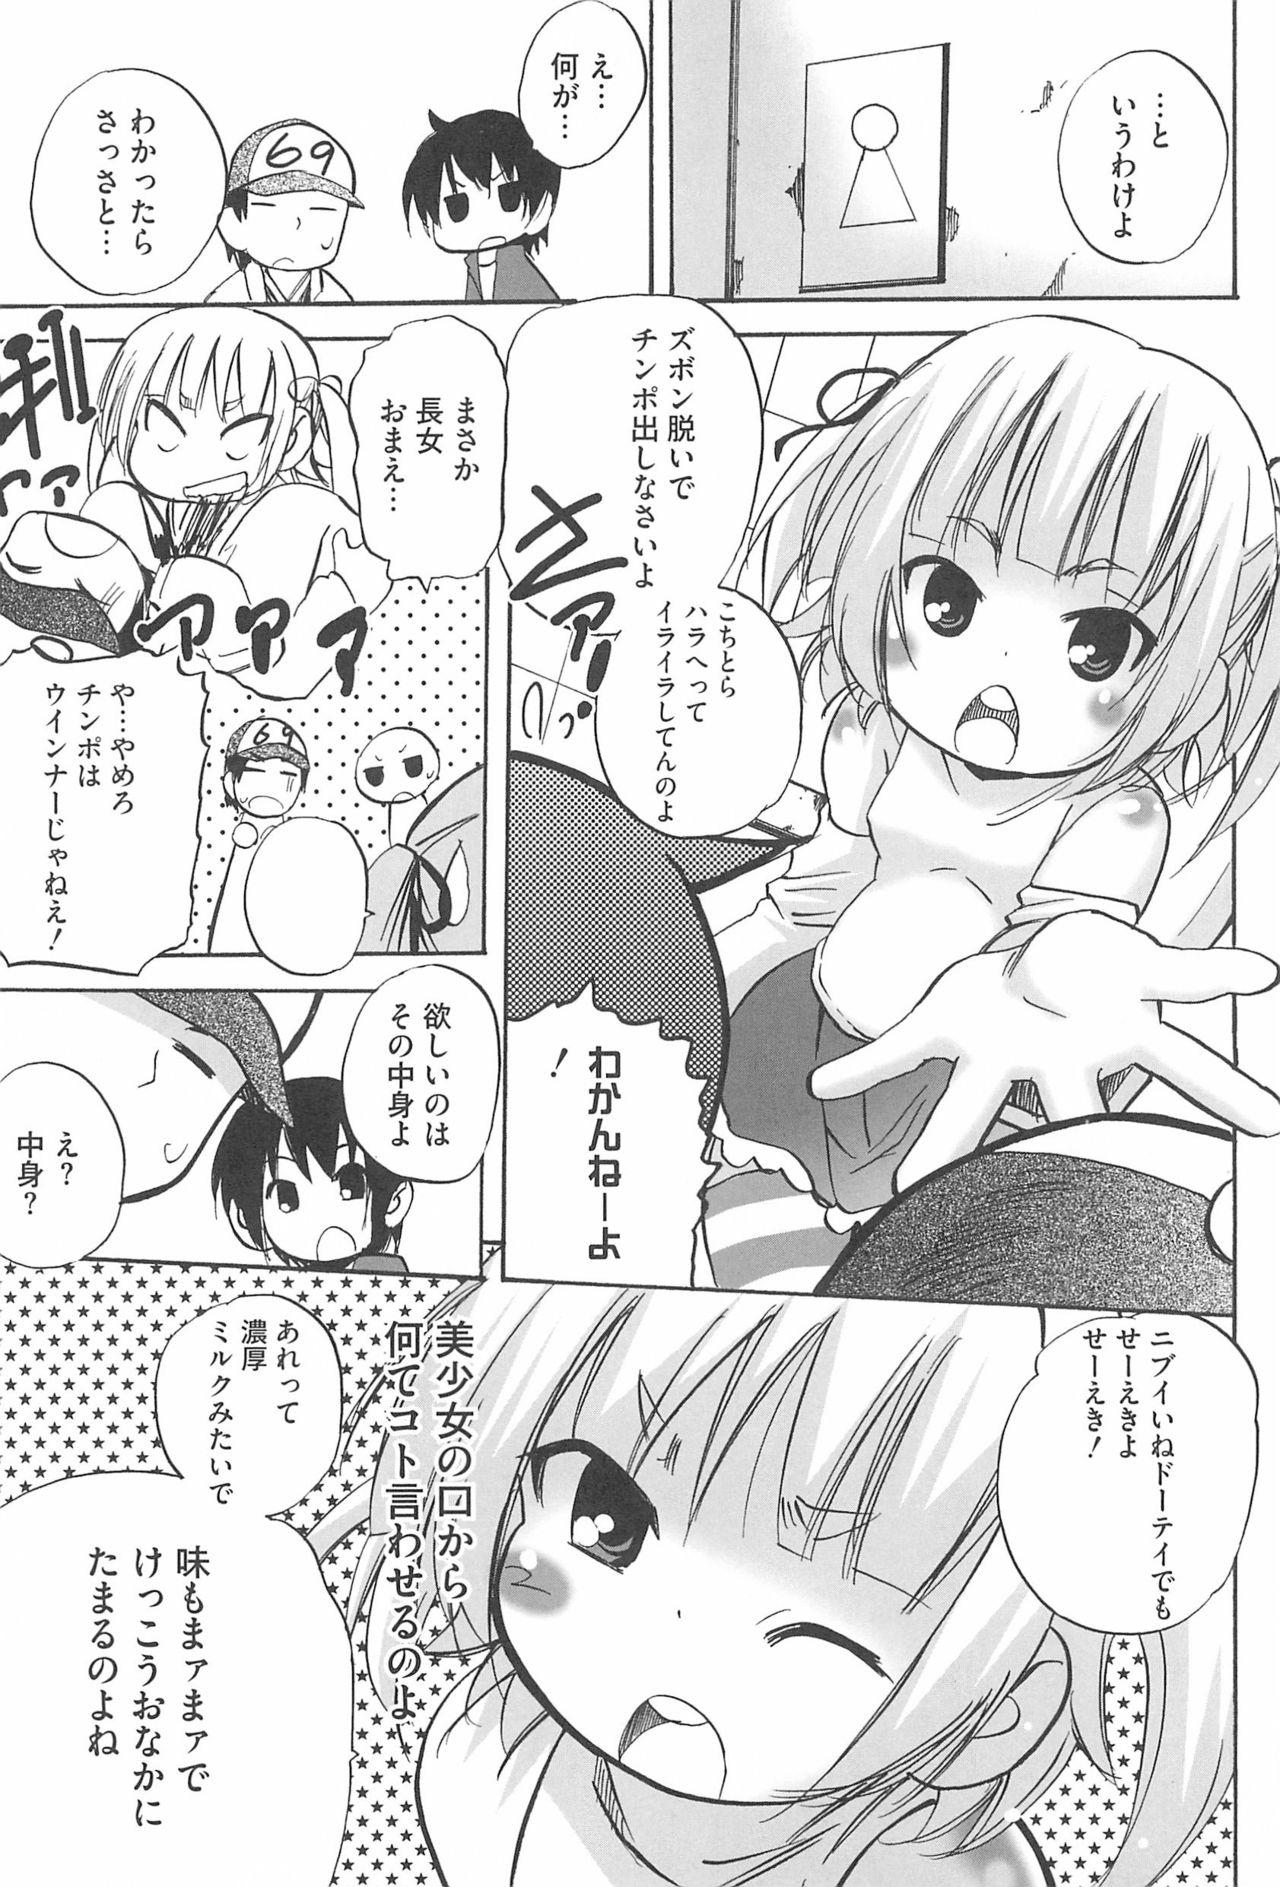 Real Orgasms [Anthology] 3-tsugo 3 Shimai no Seiyoku wa 3-bai (Mitsudomoe) - Mitsudomoe Gaydudes - Page 9